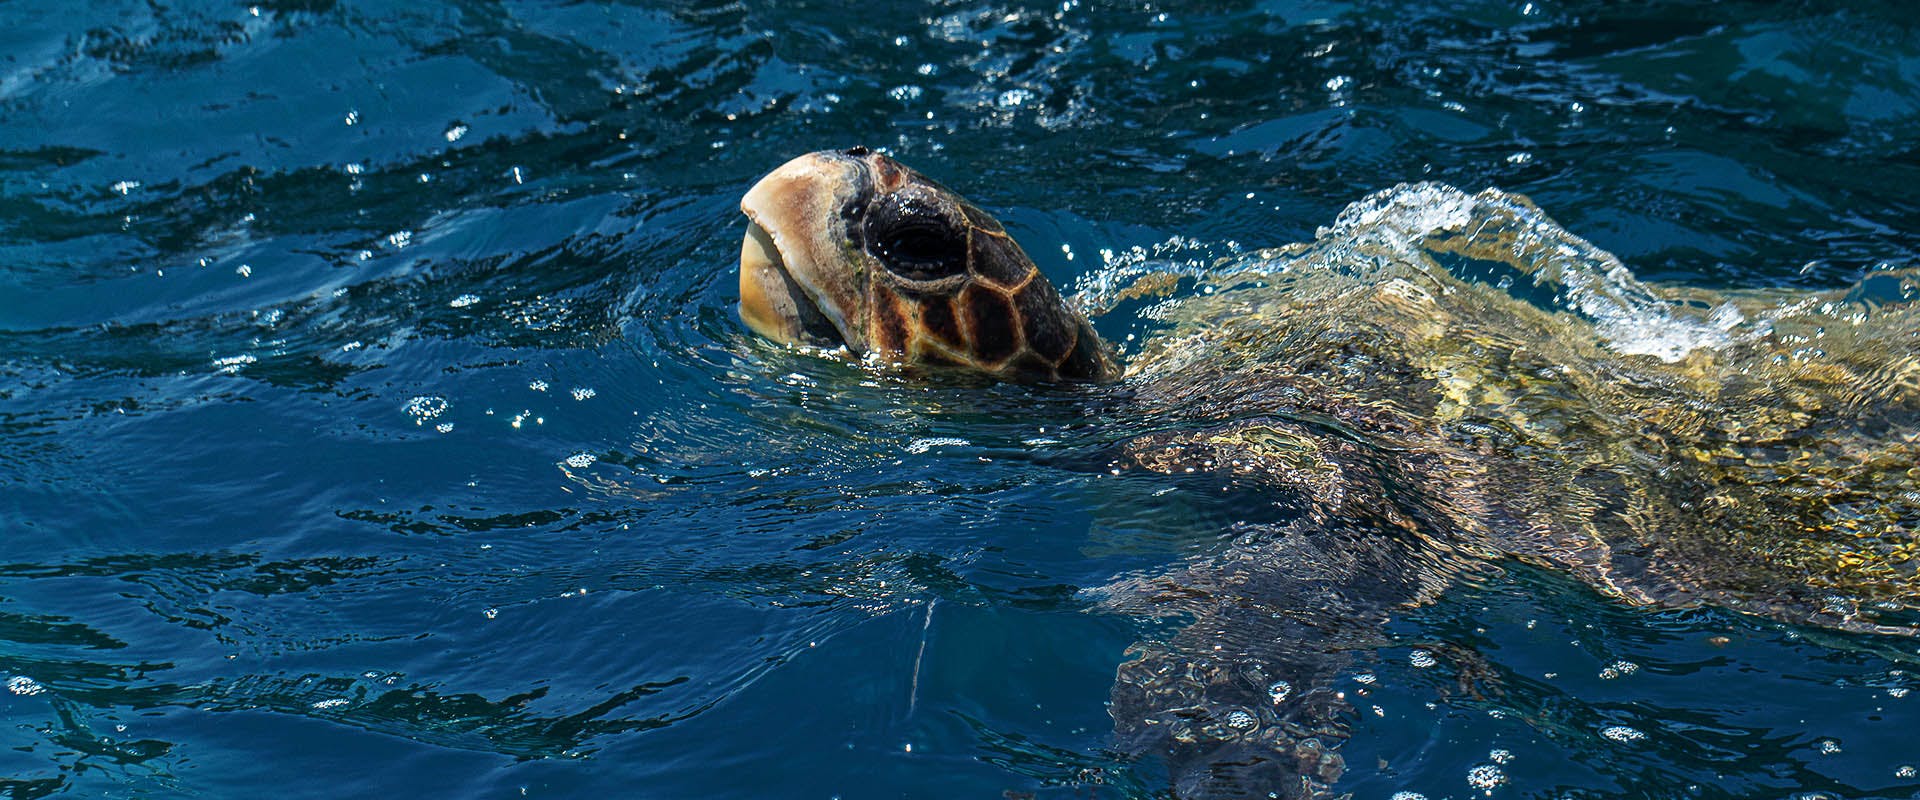 Sea Turtles that visit Sri Lanka